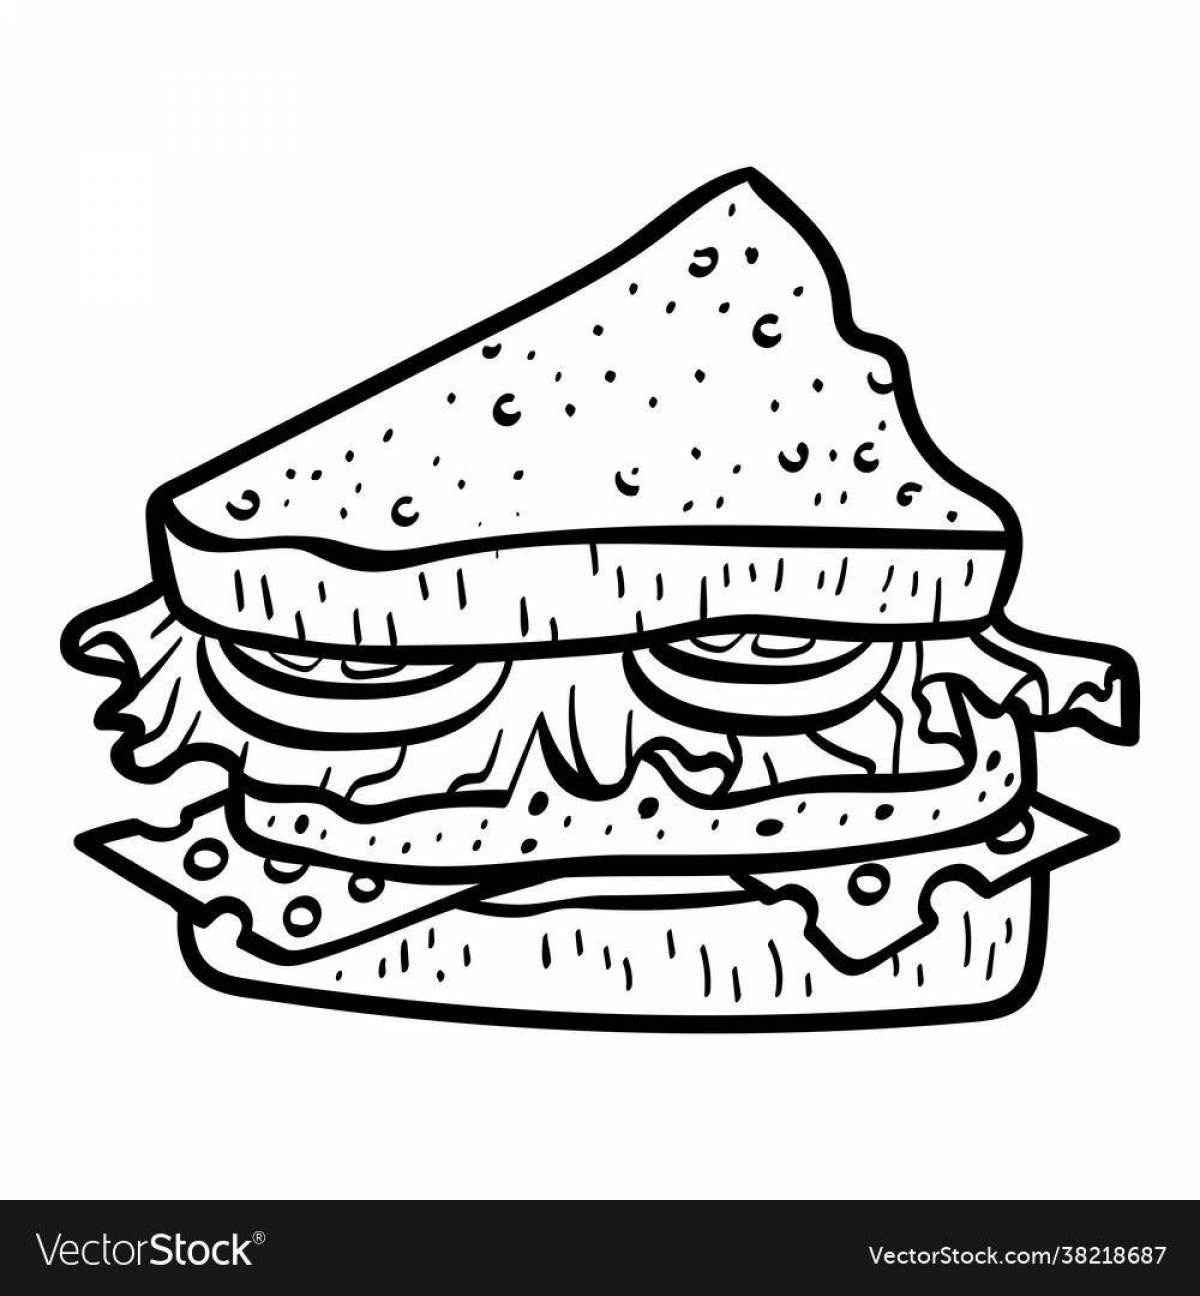 Child sandwich #9